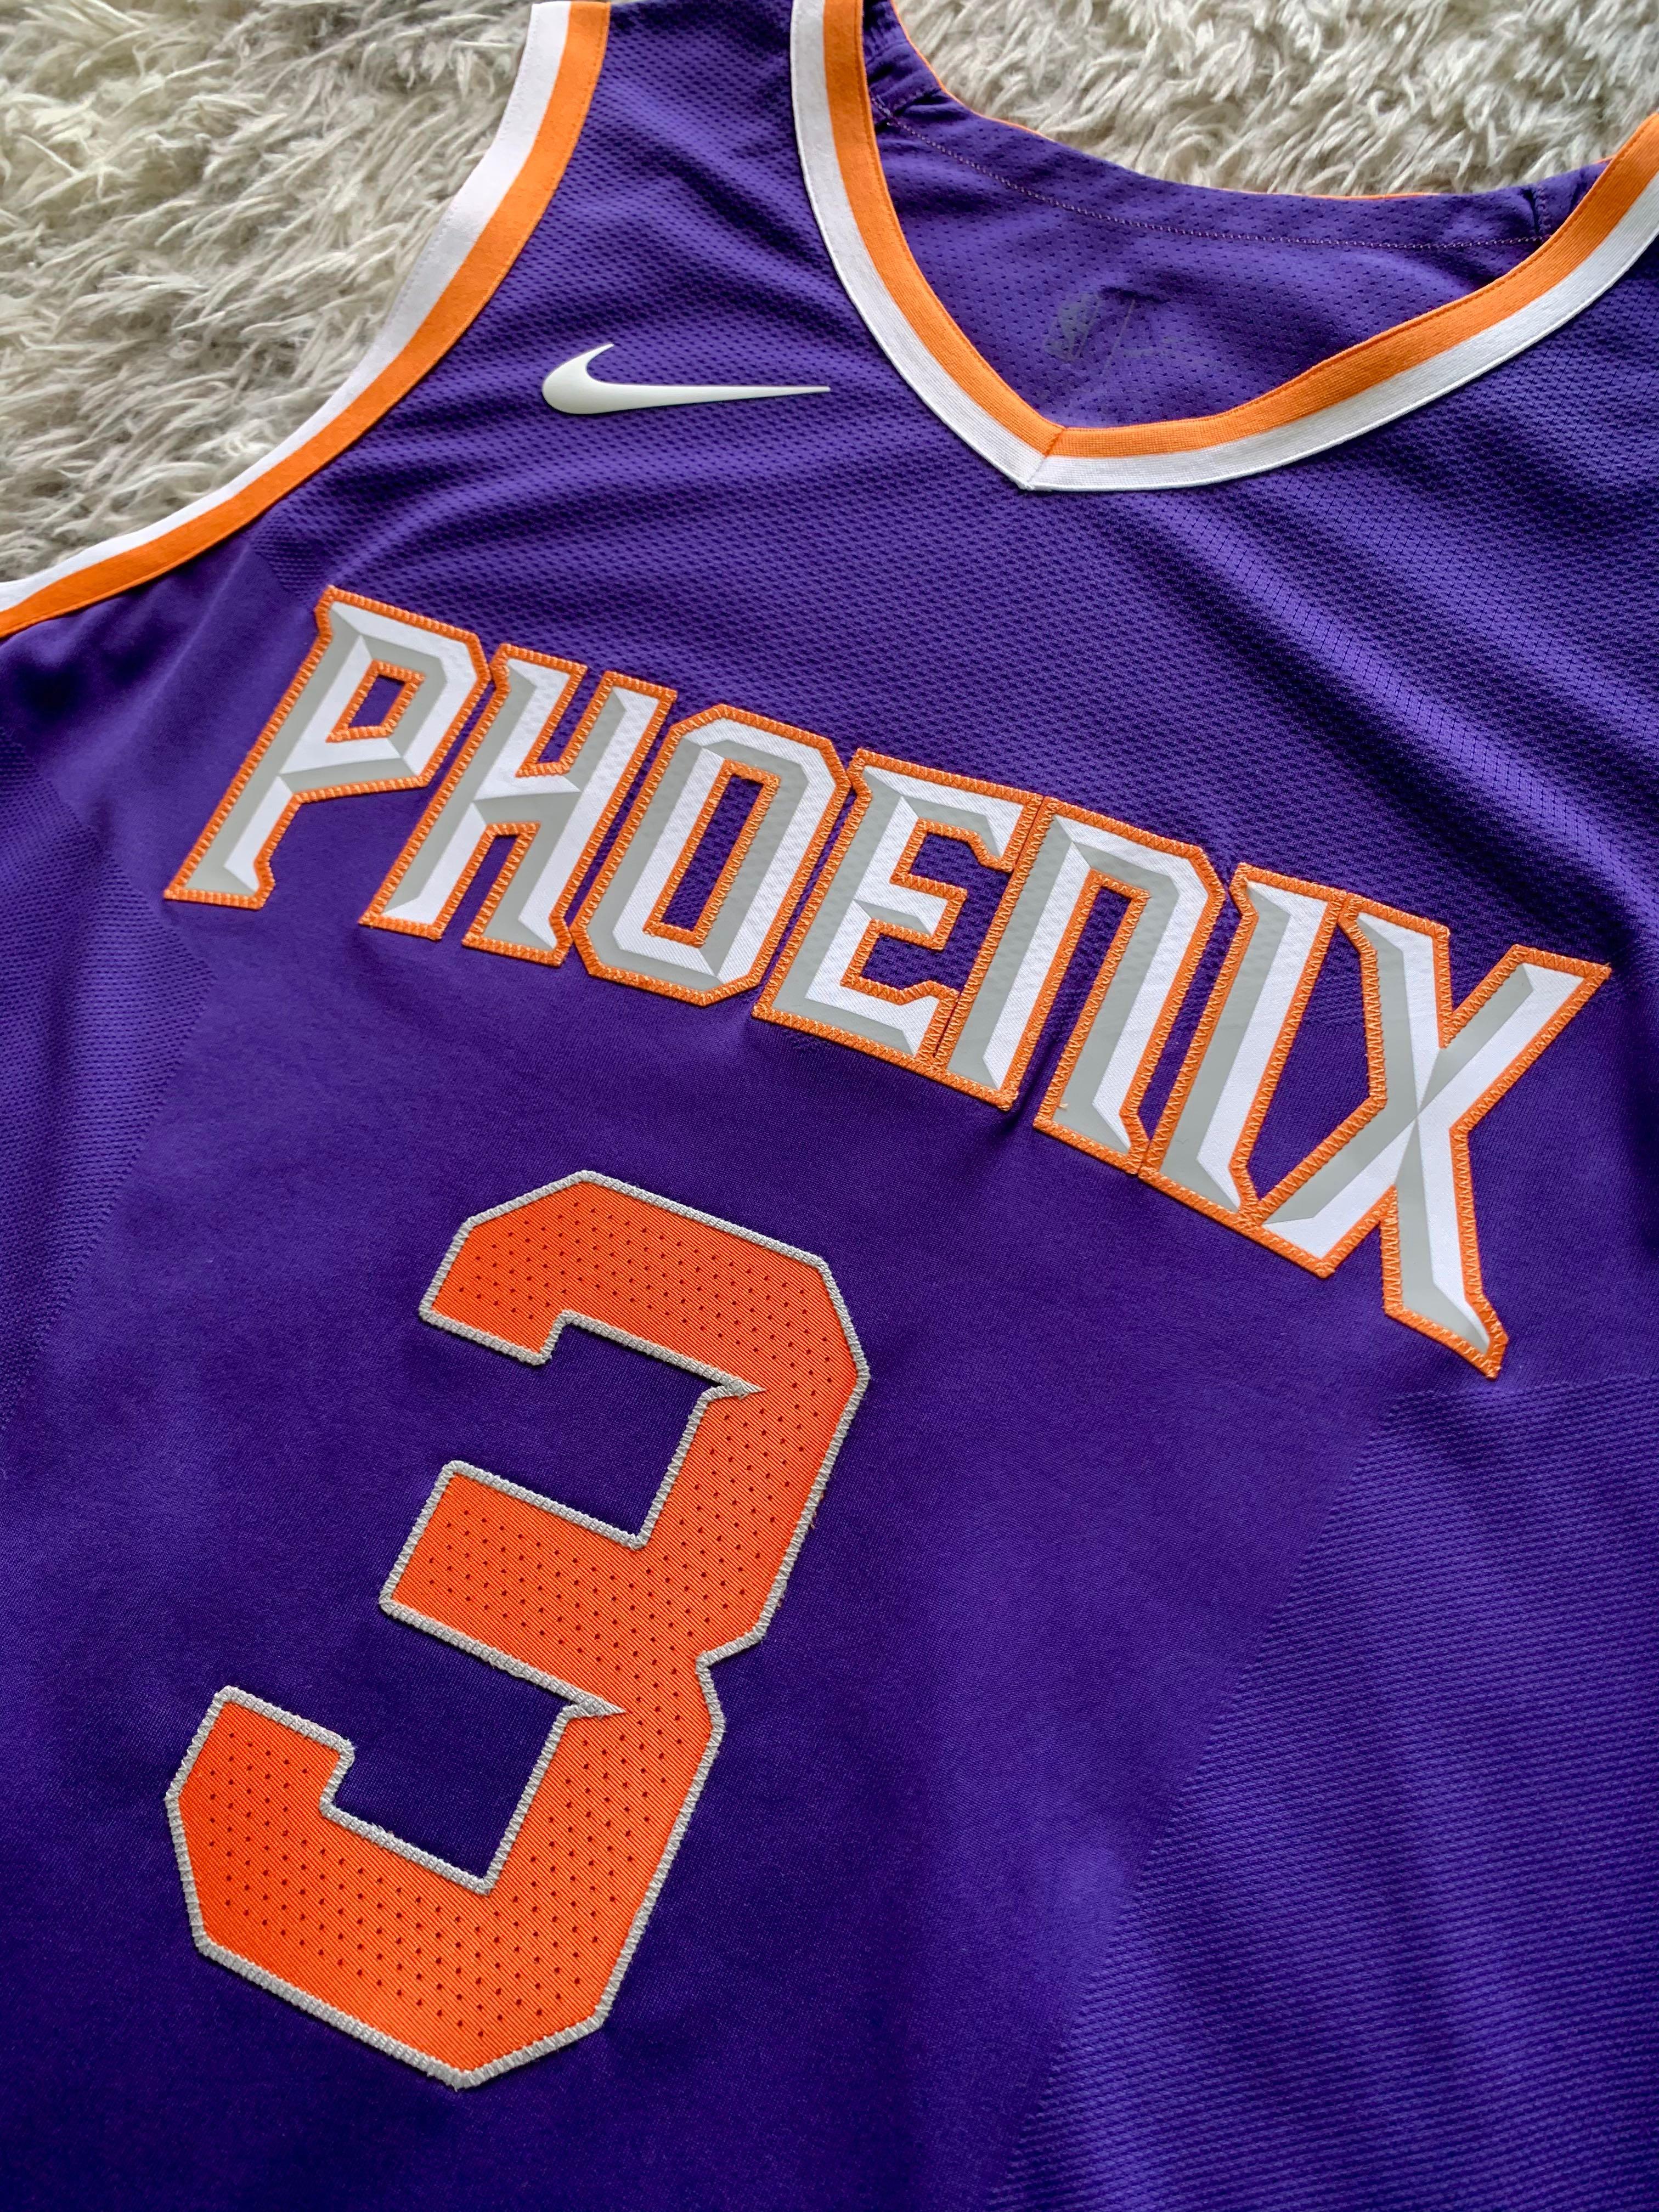 Nike NBA Swingman Phoenix Suns Chris Paul #3 Icon Jersey 52/xl PayPal Patch